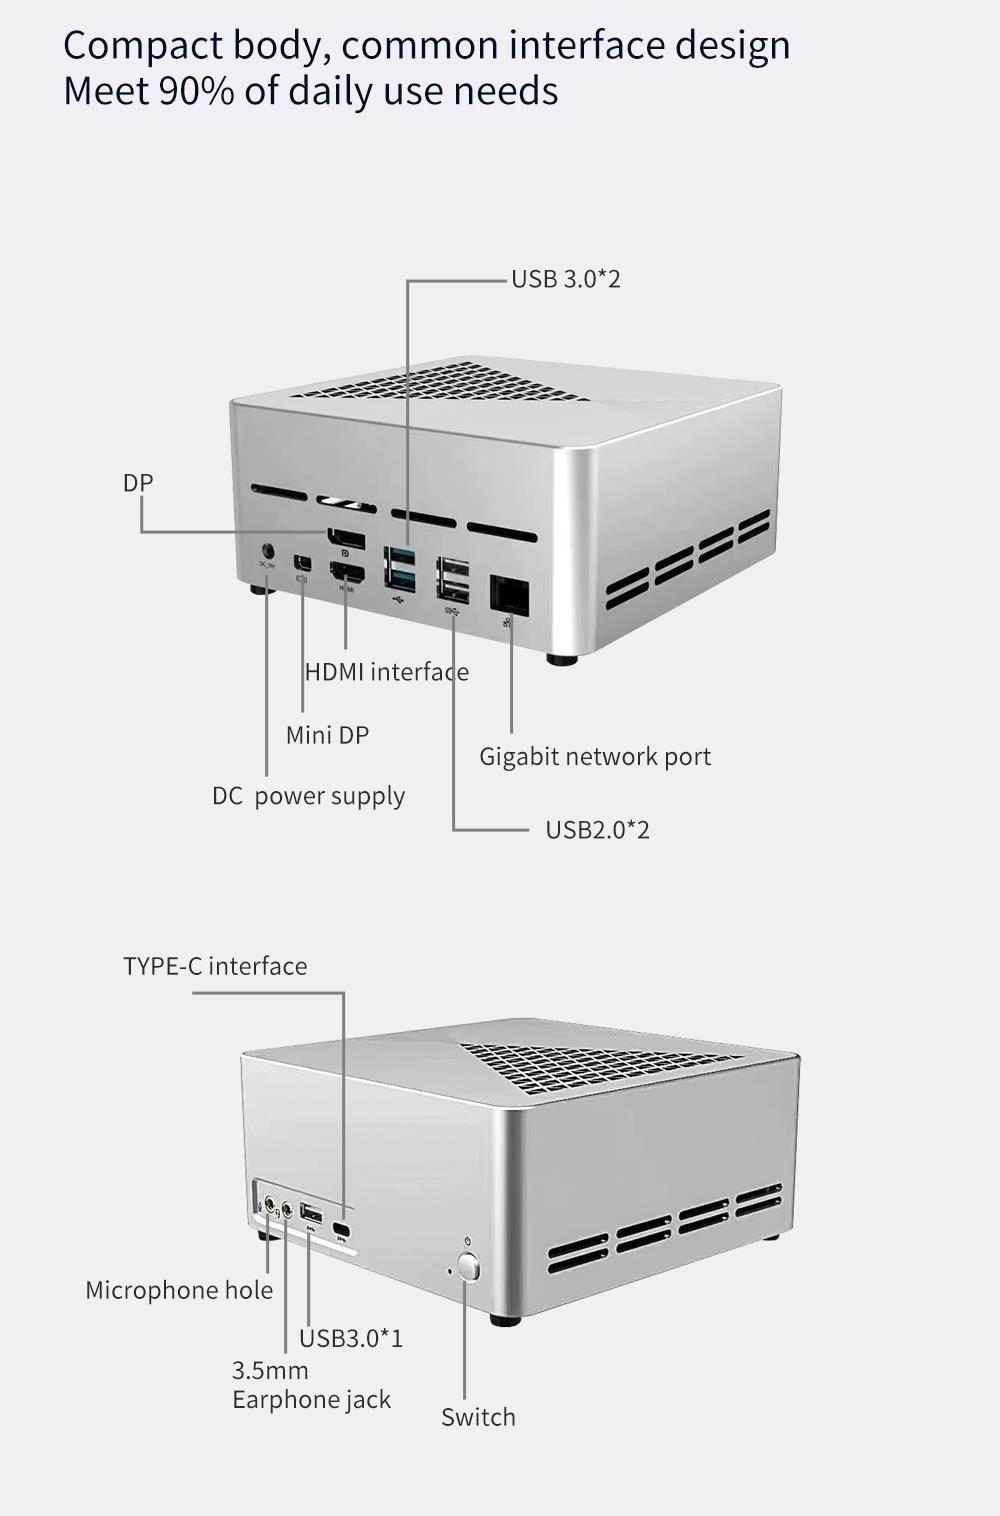 RX1 Mini PC, Windows 11, G5900 Prozessor, UHD610 Grafik, 8 GB DDR4 256 GB SSD